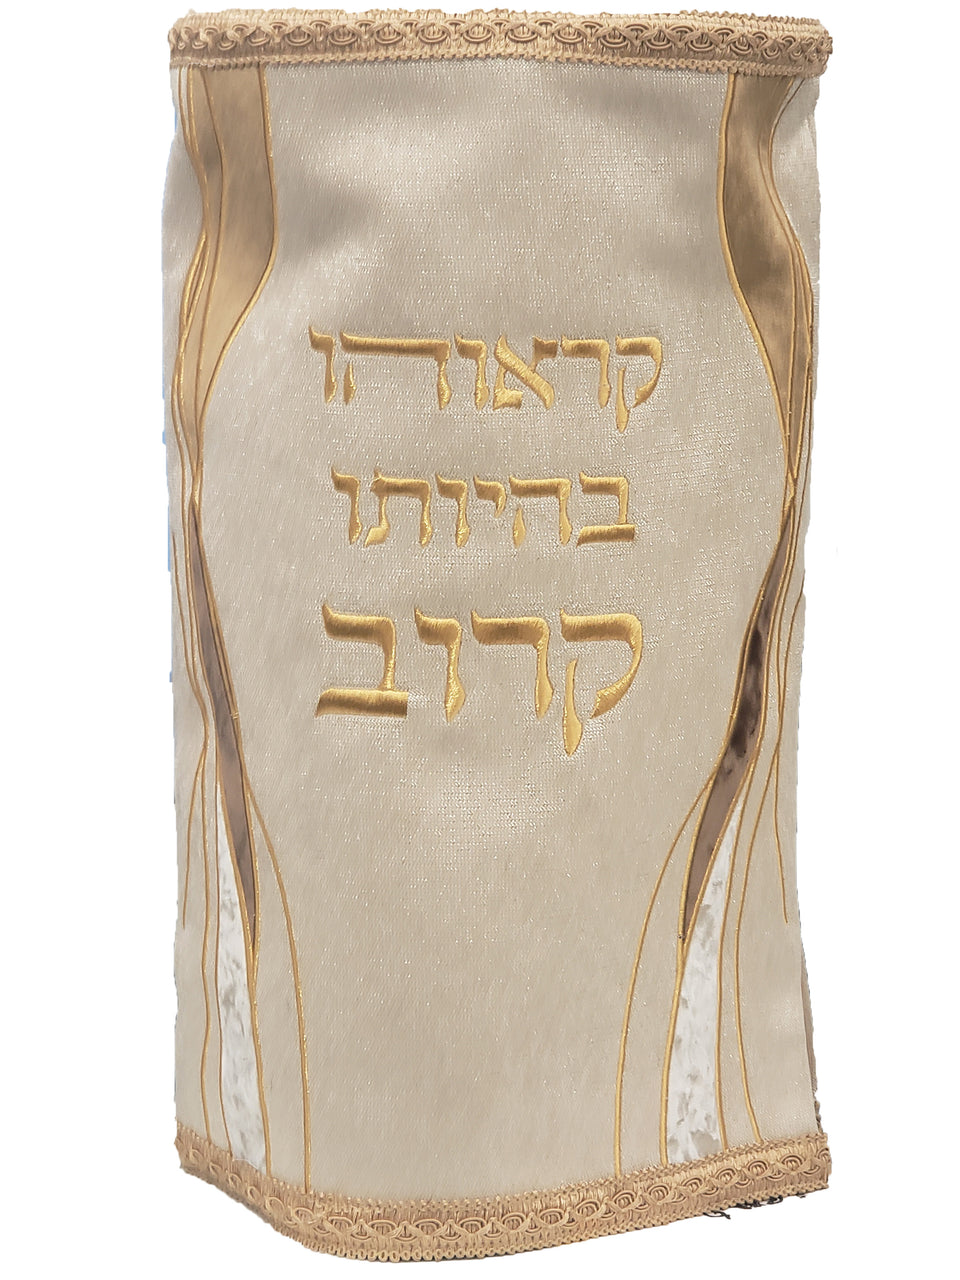 Sefer Torah Mantel #55-1